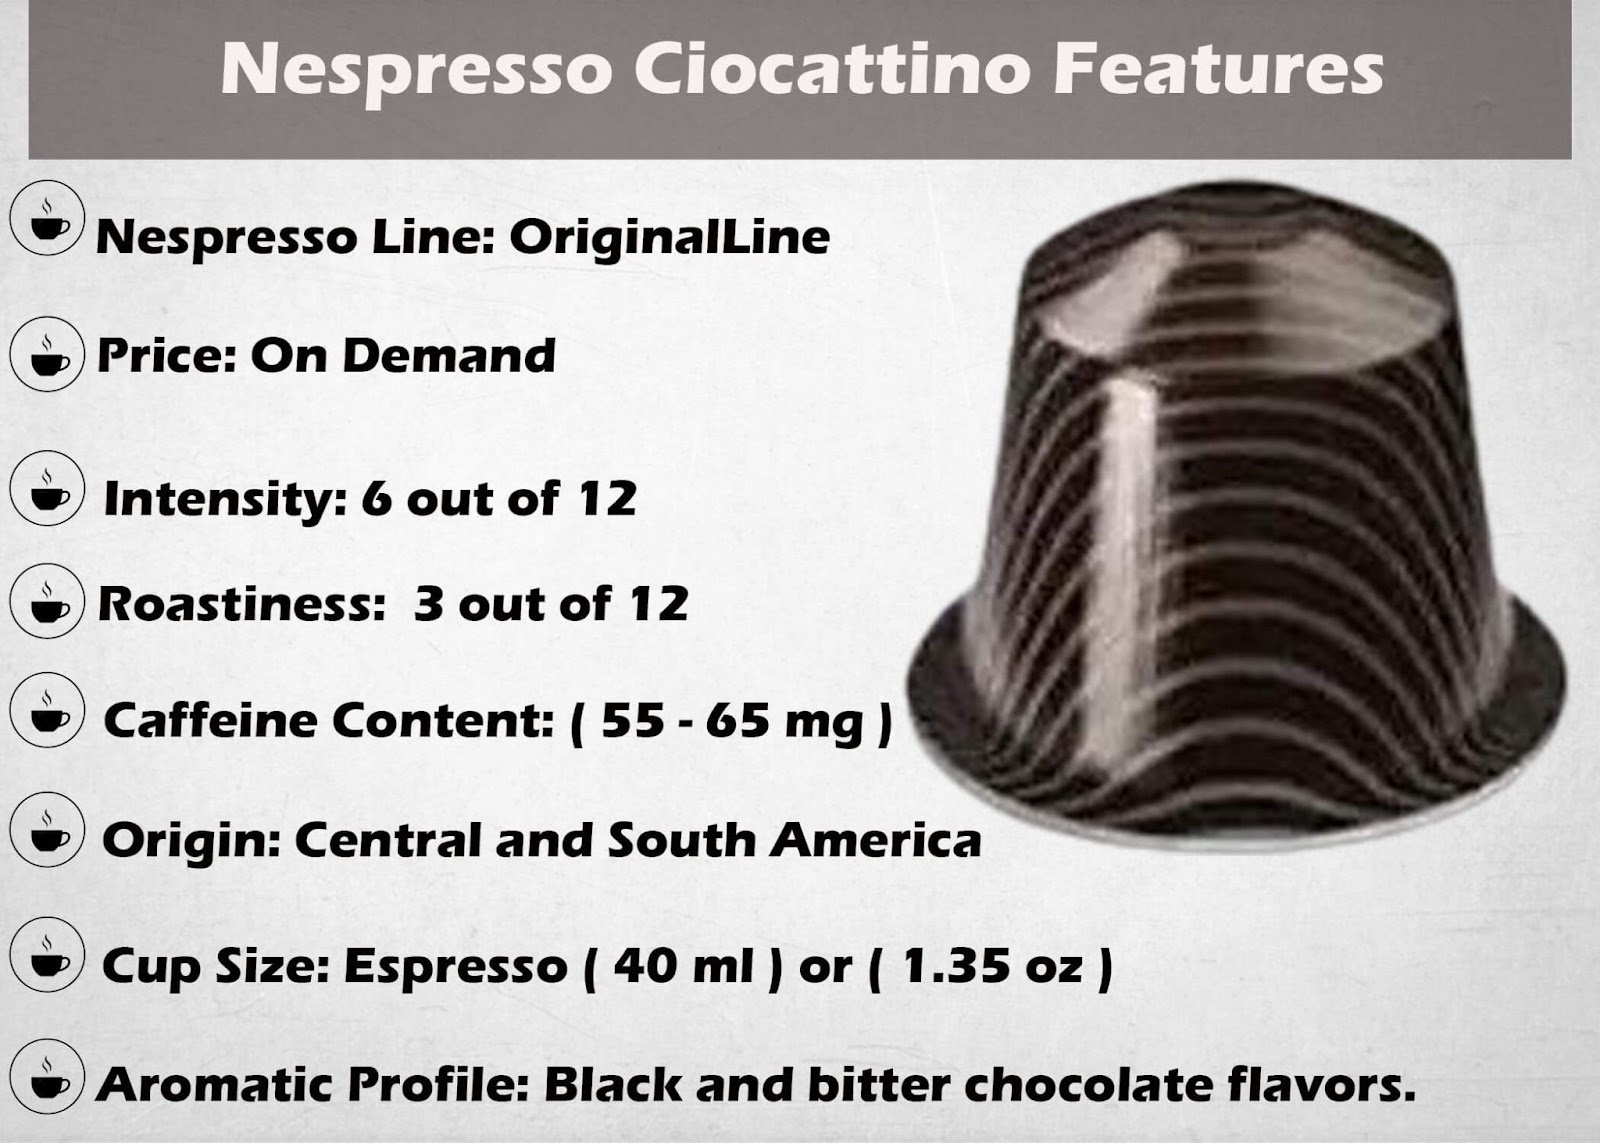 Features Chart of Nespresso Ciocattino Original Line Capsule.